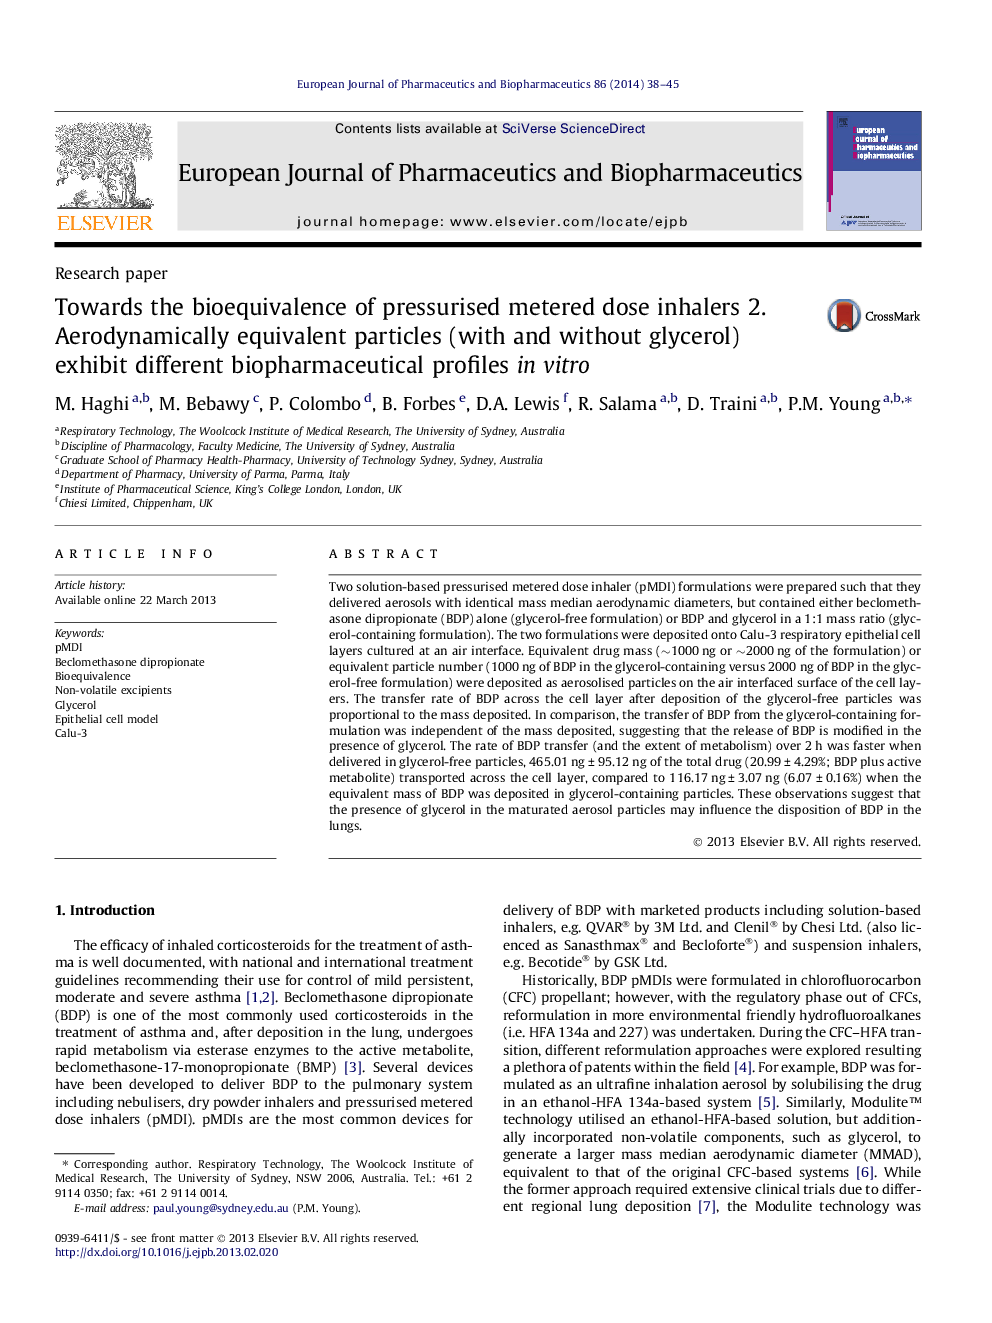 نسبت به اکسیژن زیستی دوزهای انحصاری تحت فشار تحت فشار 2. ذرات معادل با آئروودینامیکی (با و بدون گلیسرول) پروفیل های مختلف بیوفارمتی را در آزمایشگاهی نشان می دهند 